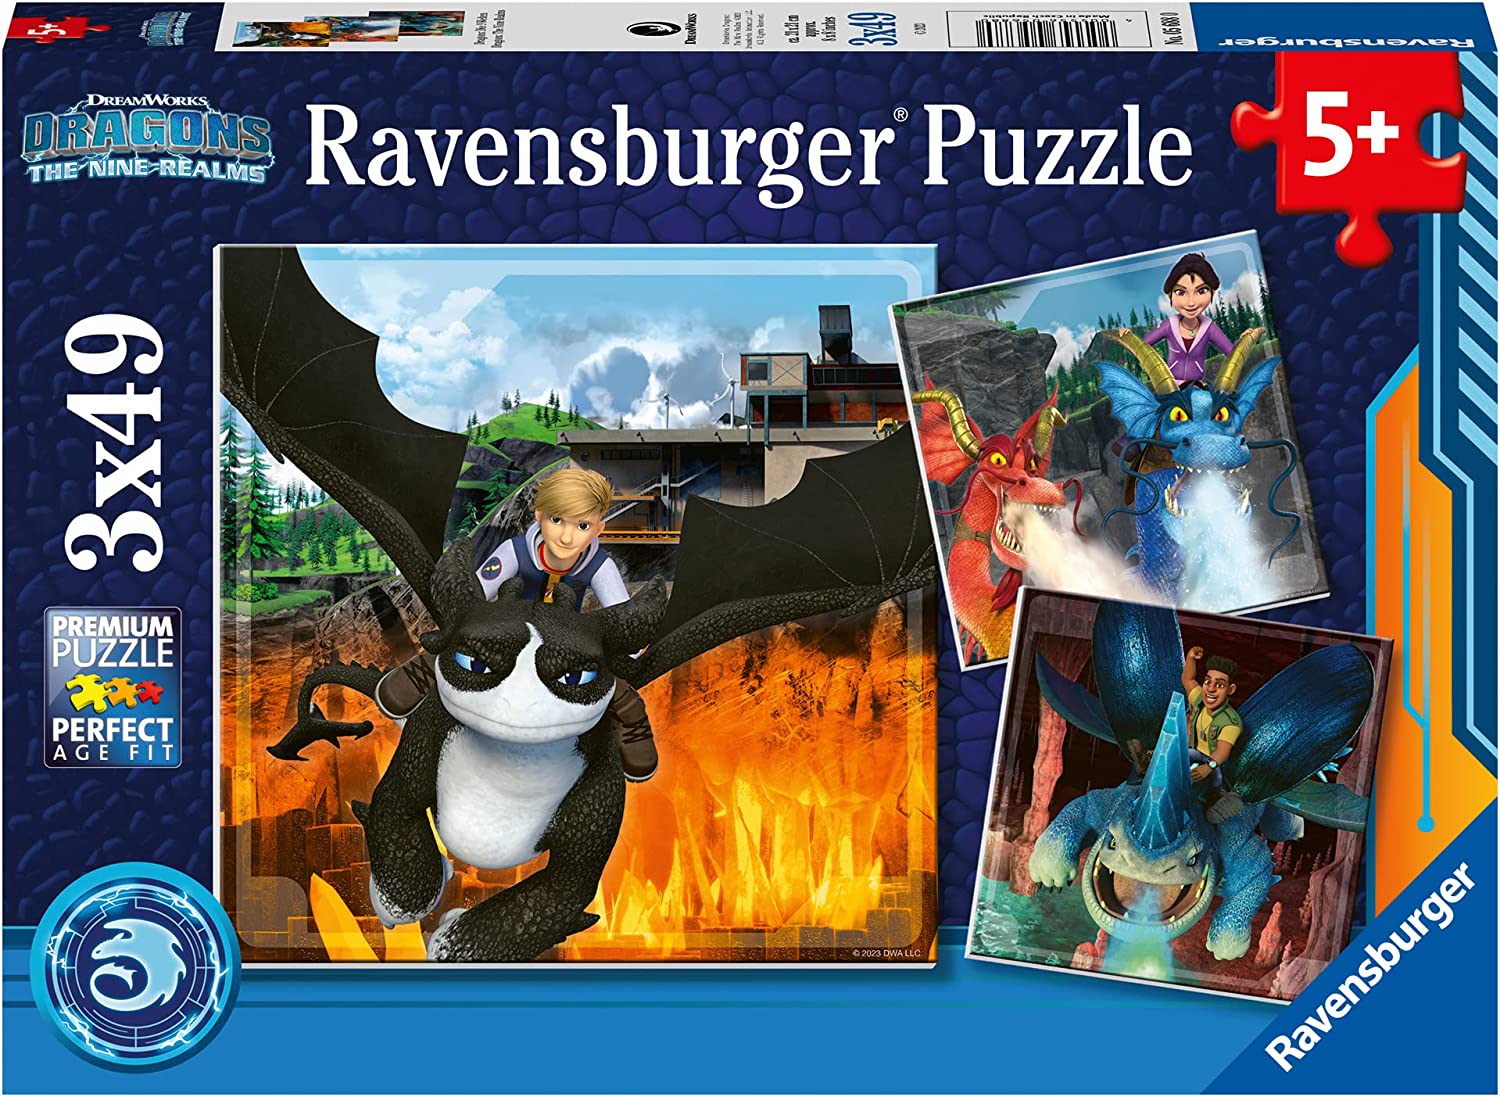 Ravensburger Puzzle 3000 pièces - Règne des dragons